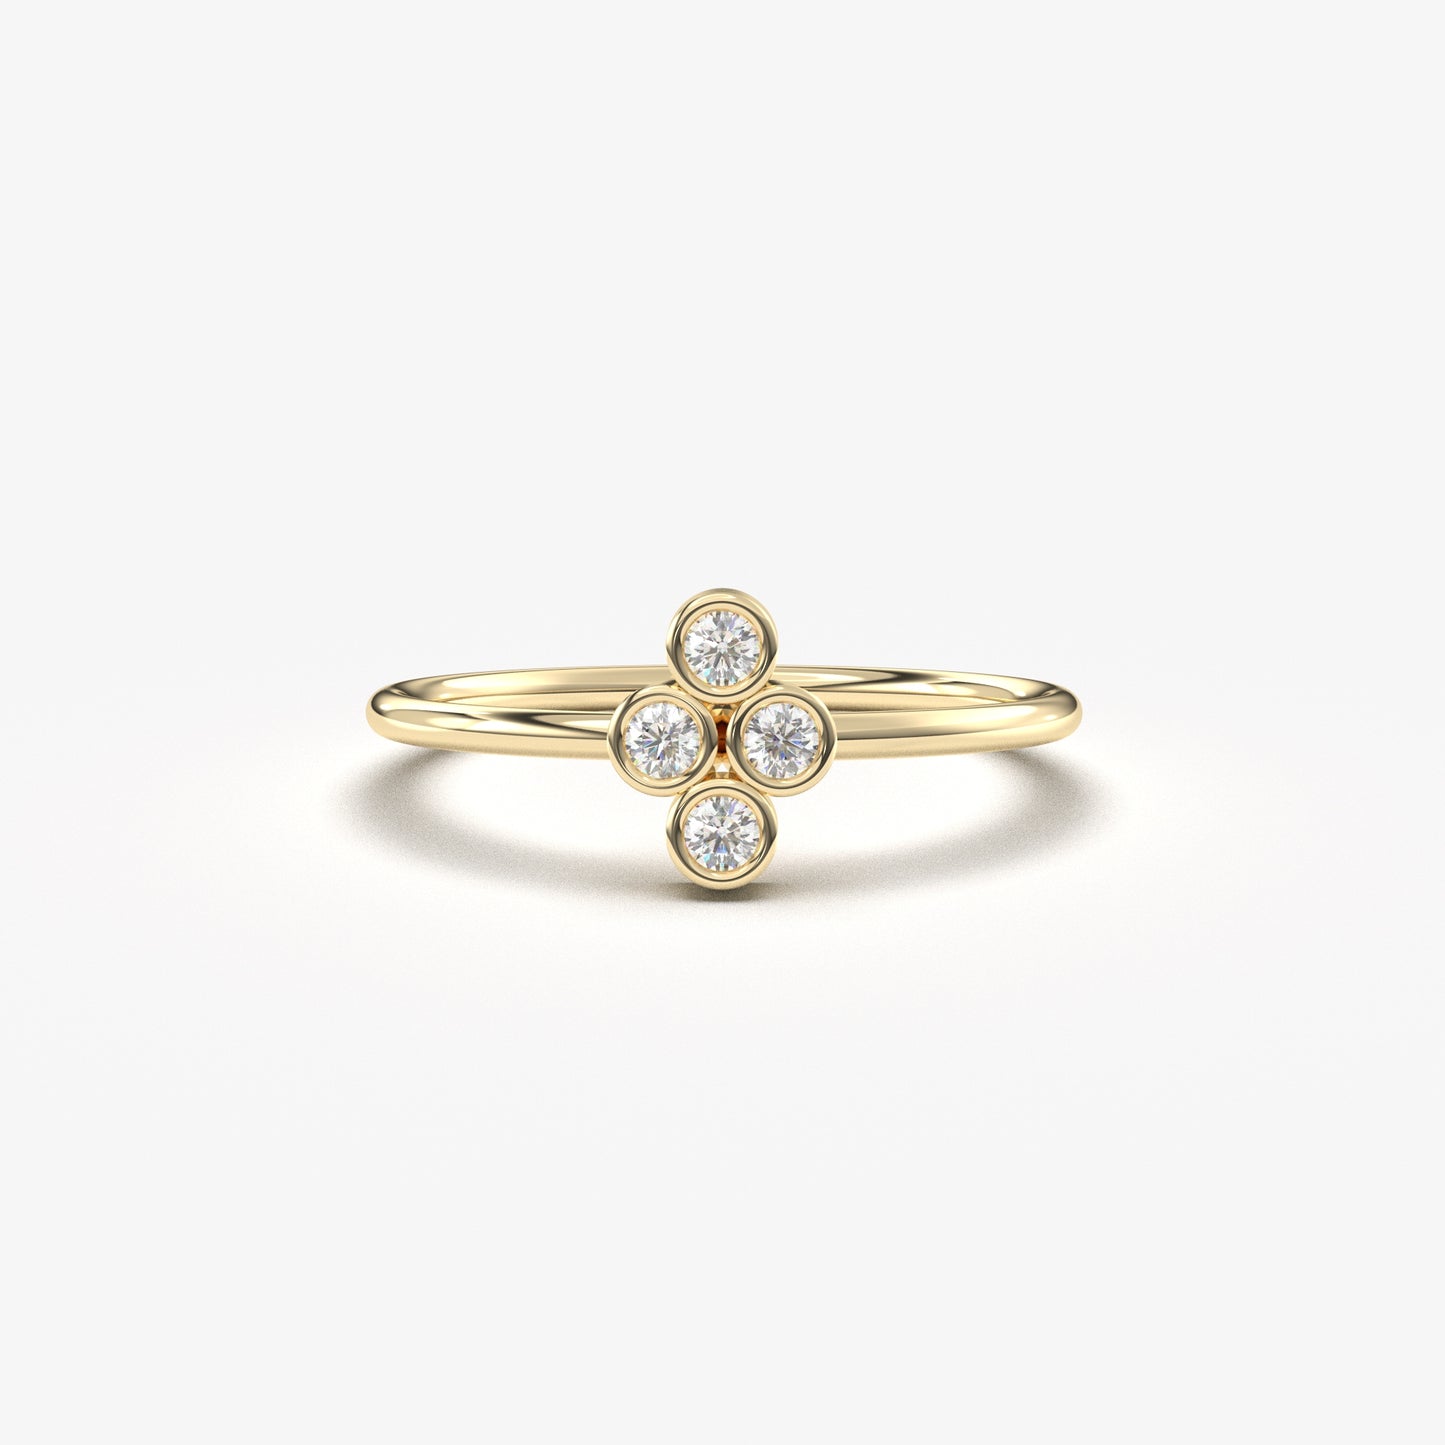 18K Gold Delicate Diamond Ring - 2S107